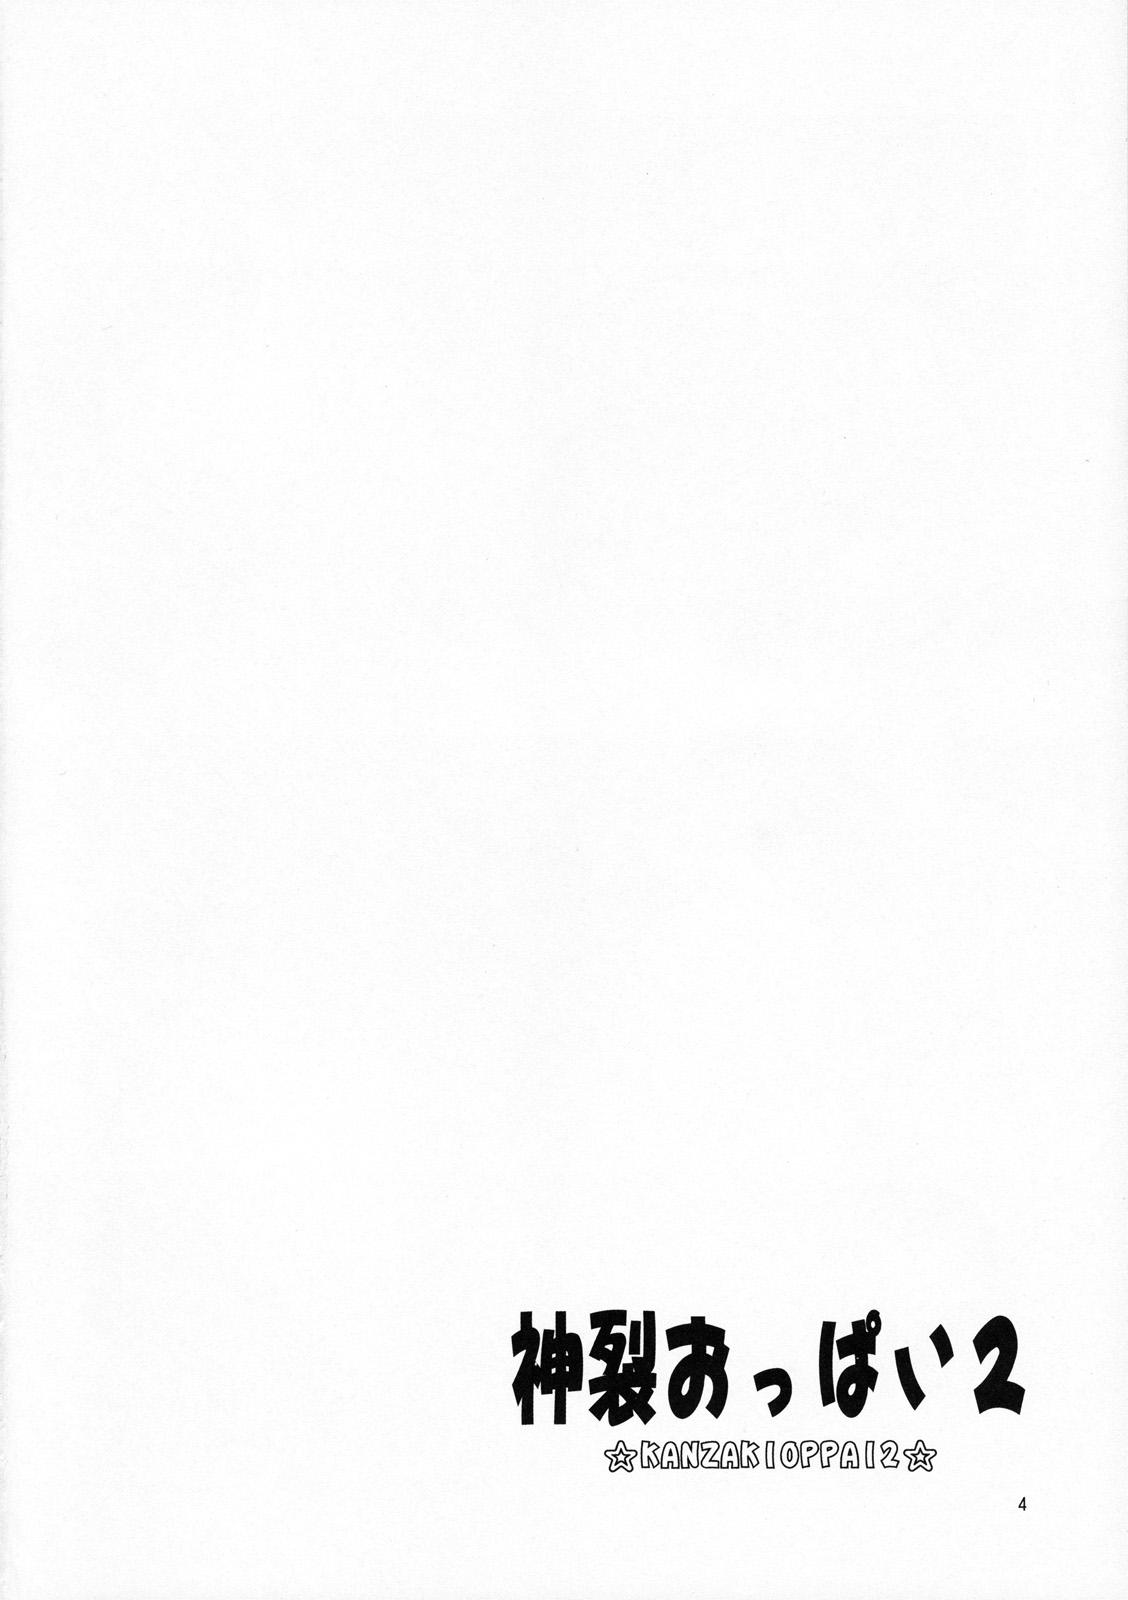 Pelada Kanzaki Oppai 2 - Toaru majutsu no index Metendo - Page 3